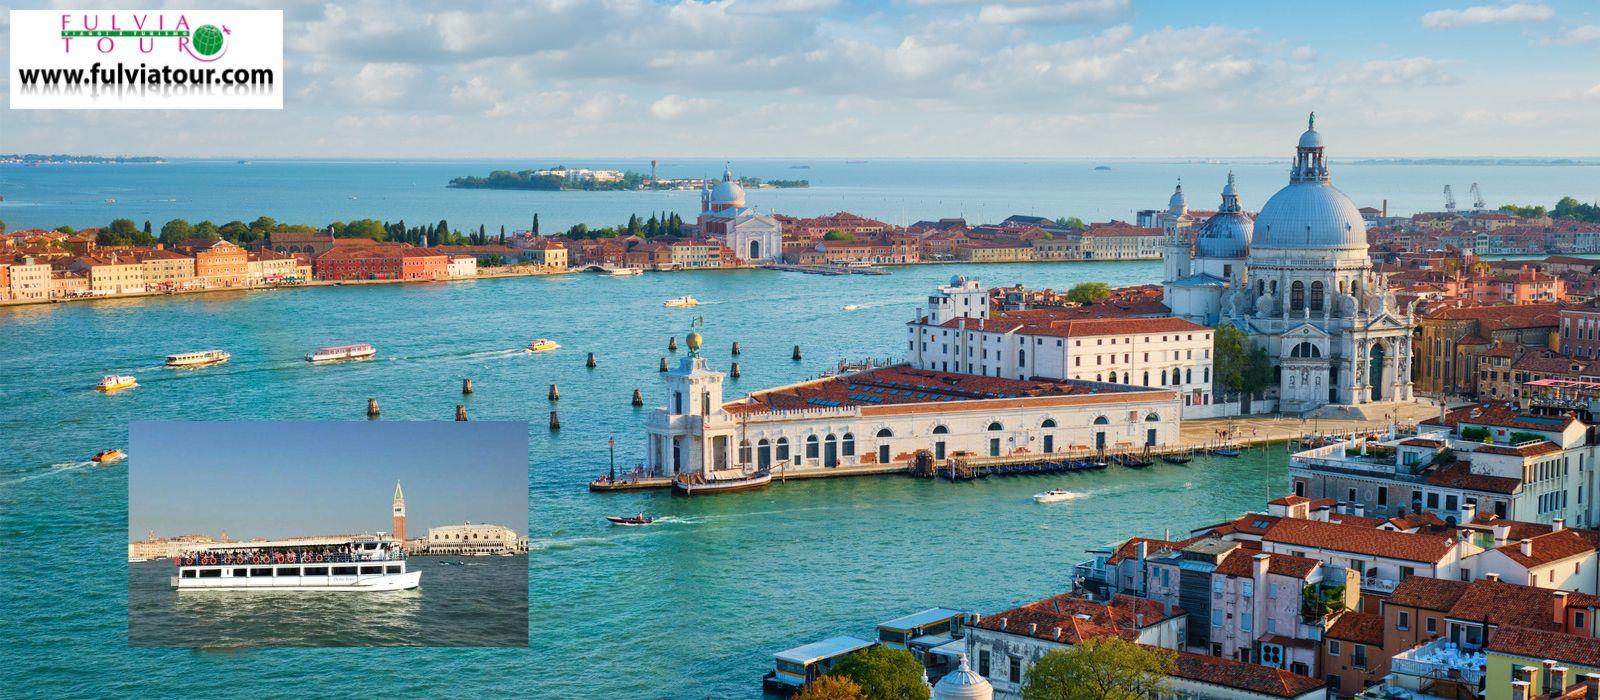 Minicrociera Isole di Venezia 